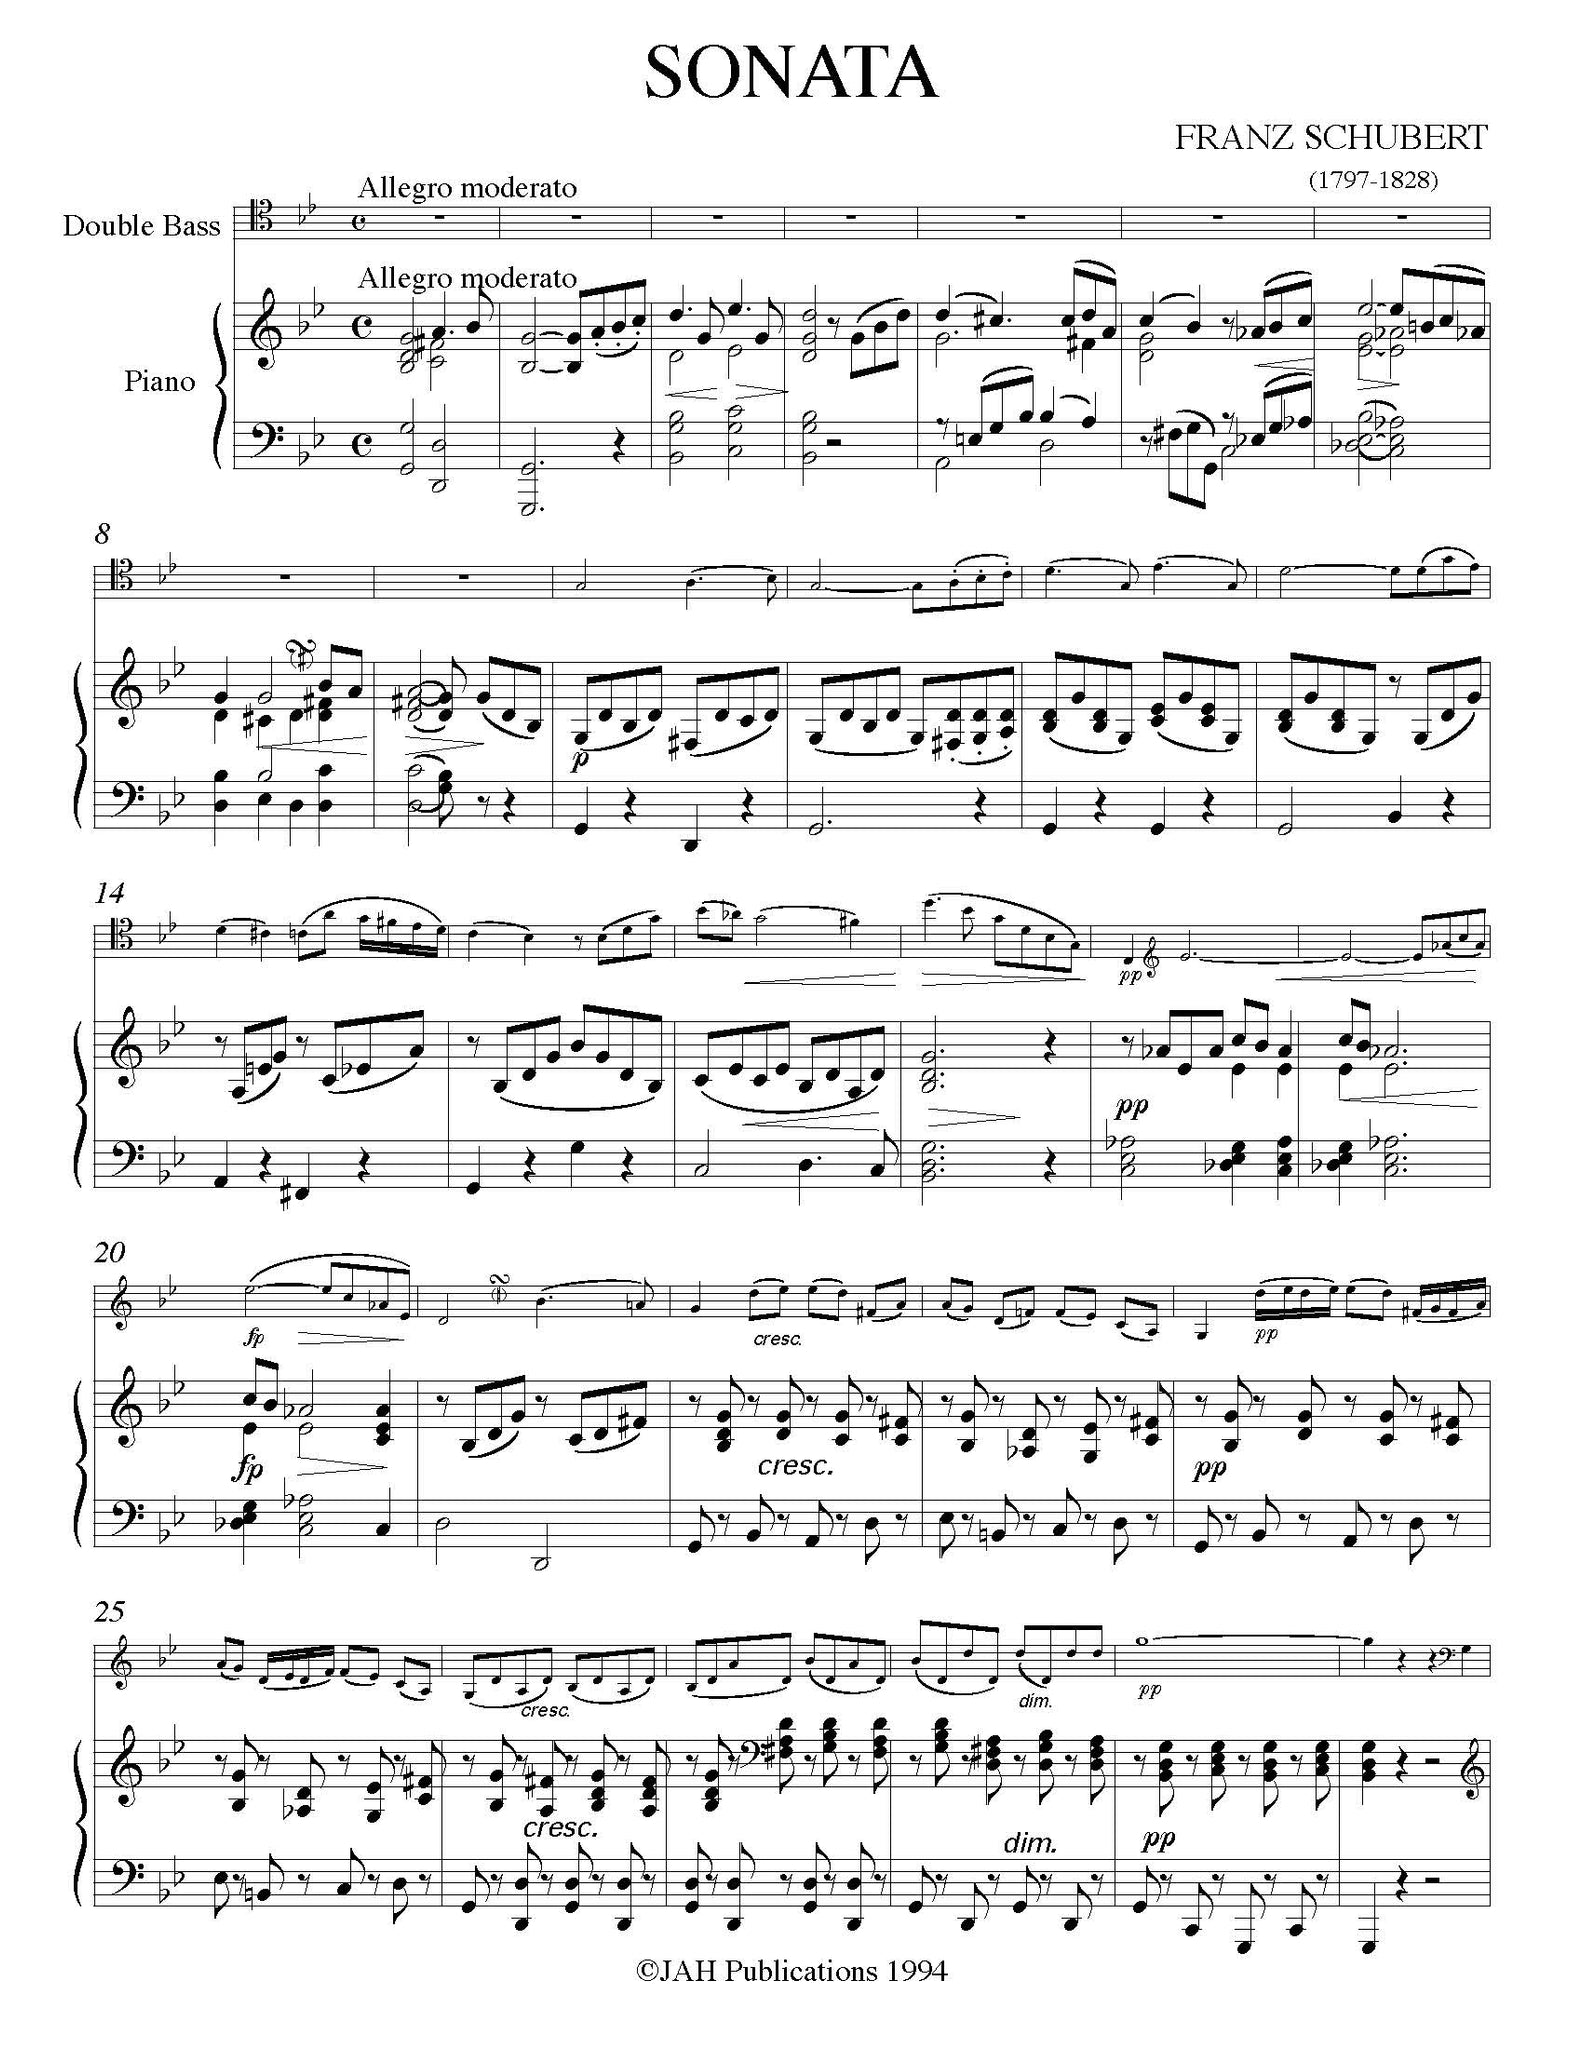 Schubert Sonata Arpeggione g minor orchestra tuning page 1